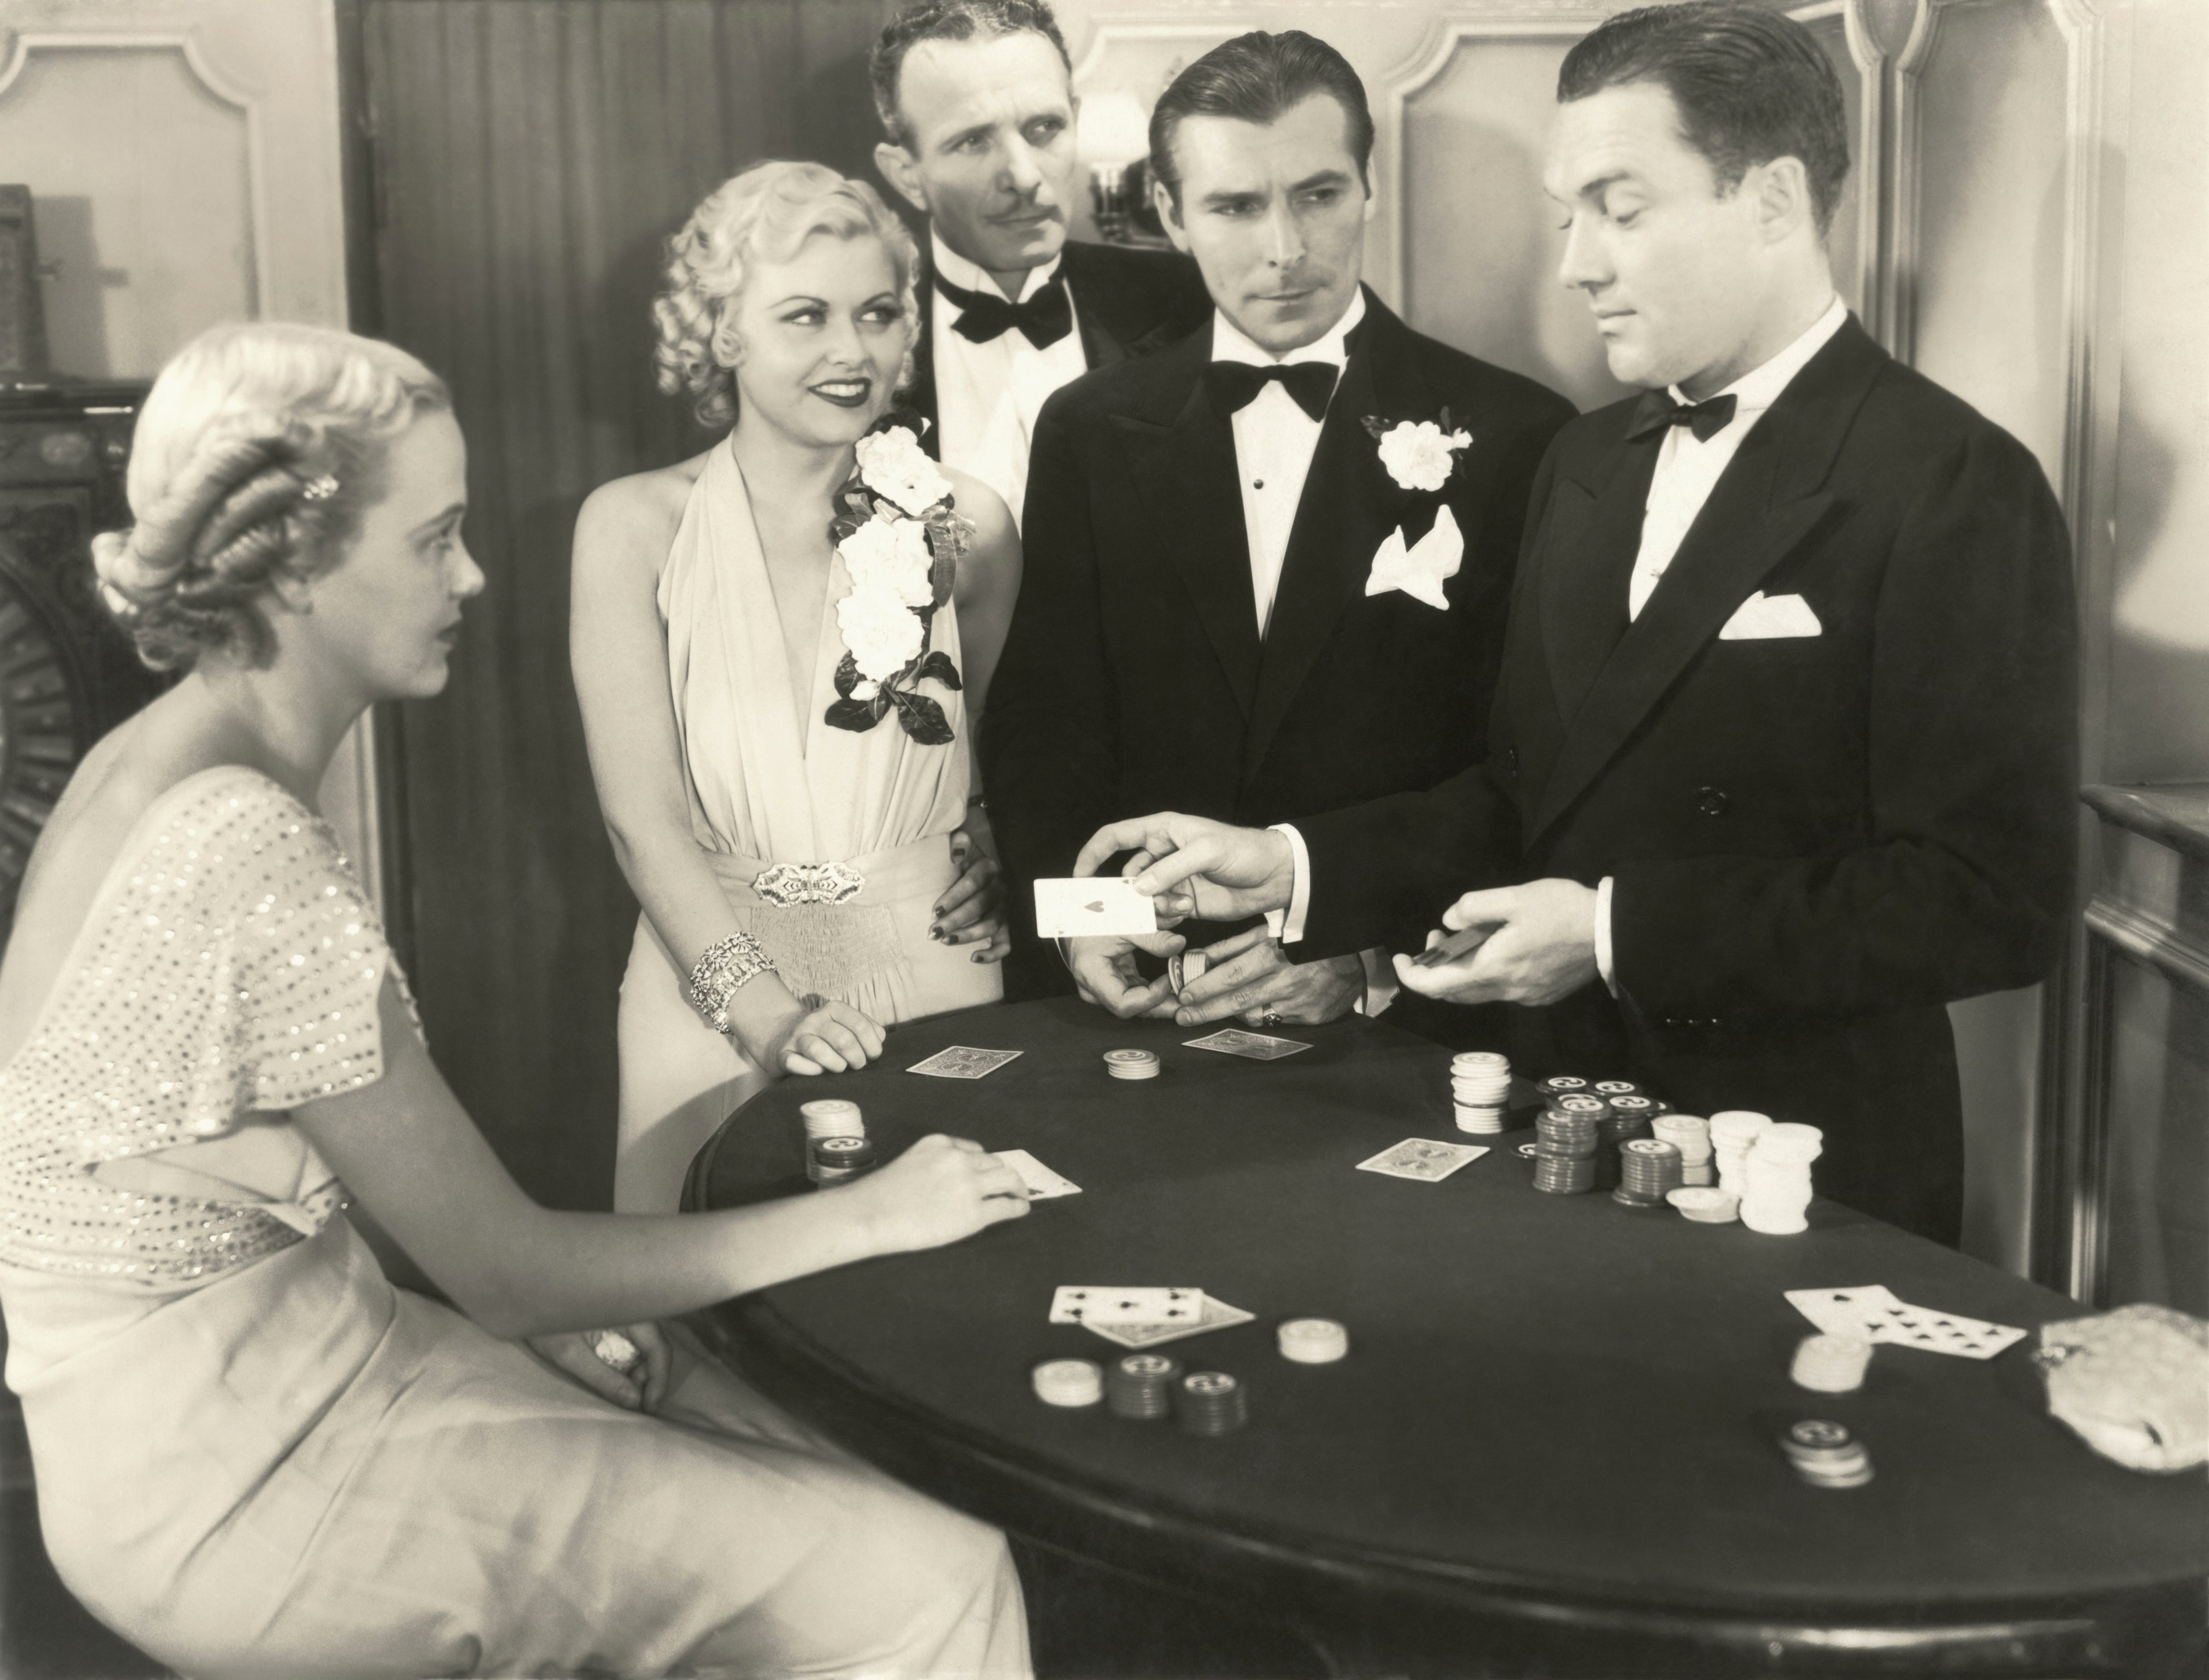 Pok - juego de poker con dados para 3-7 jugadores